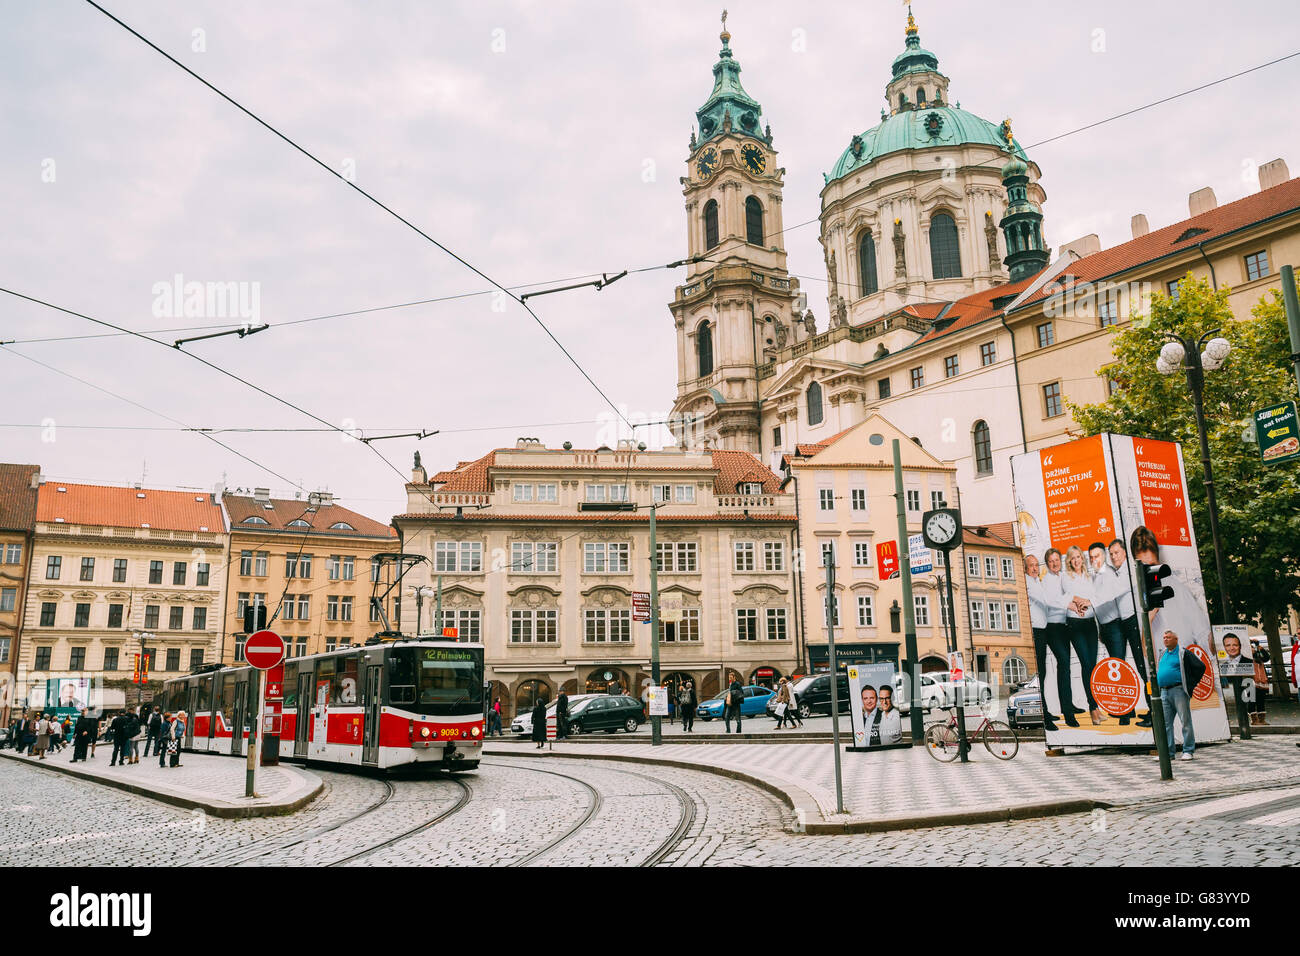 Praga, Repubblica Ceca - 10 Ottobre 2014: il movimento del vecchio tram rosso sulla strada Malostranske namesti Foto Stock